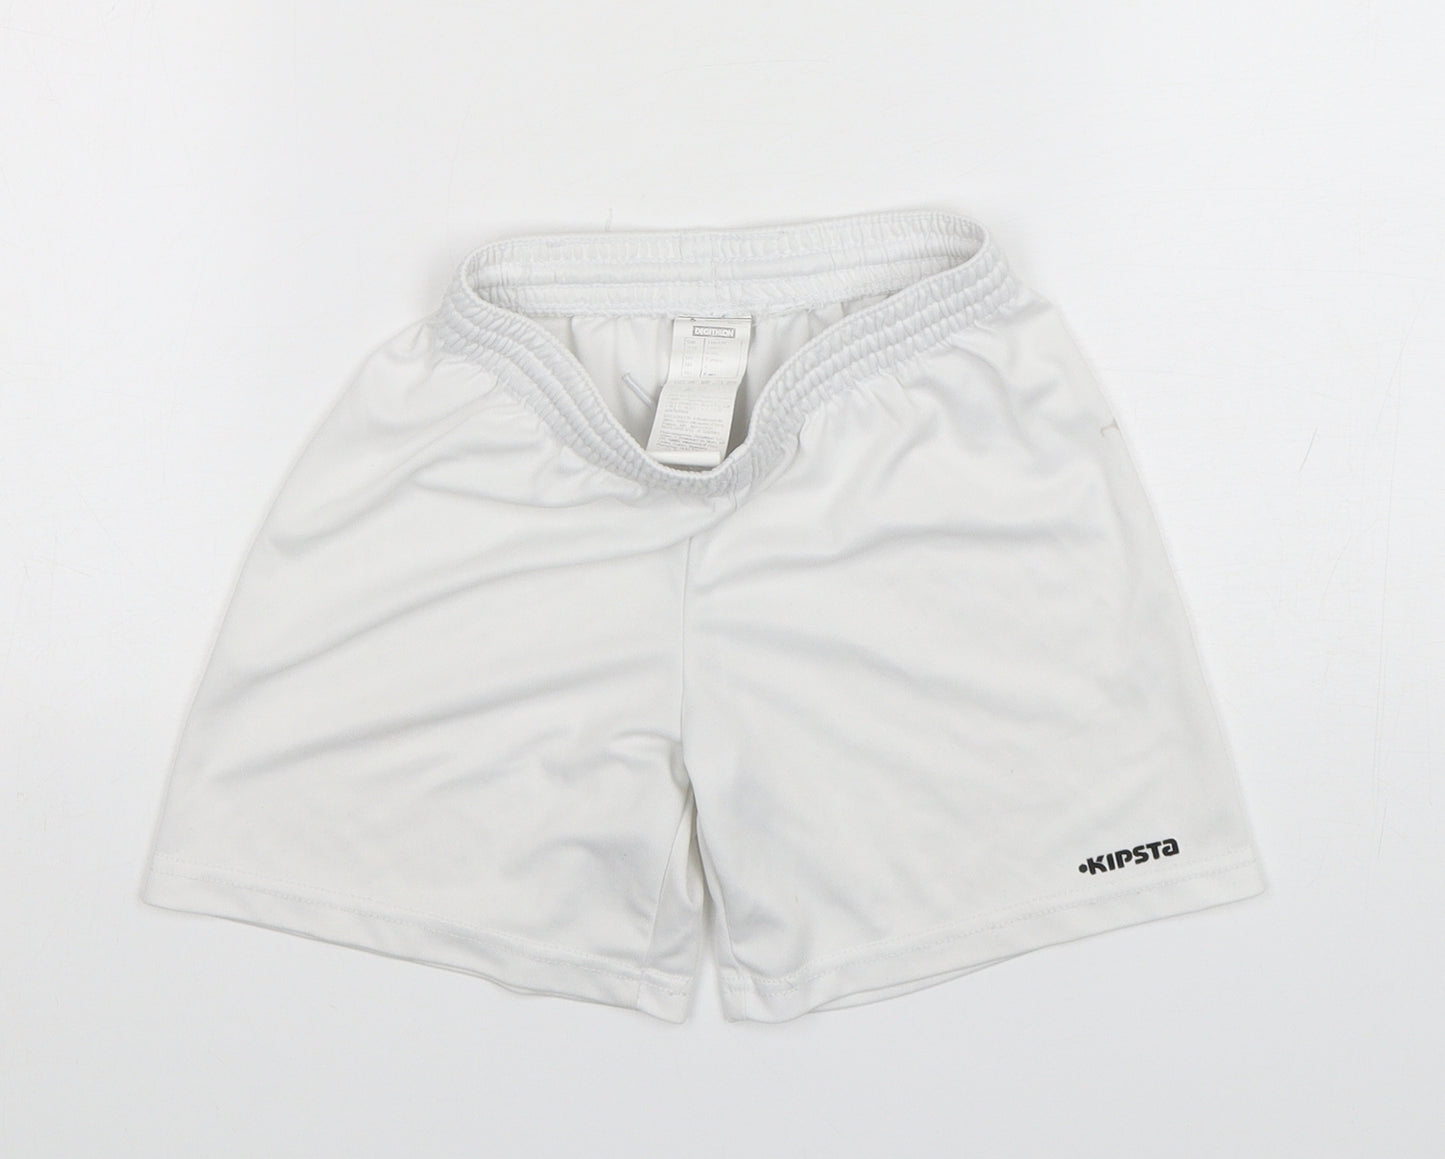 Kipsta Boys White  Polyester Sweat Shorts Size 6 Years  Regular Drawstring